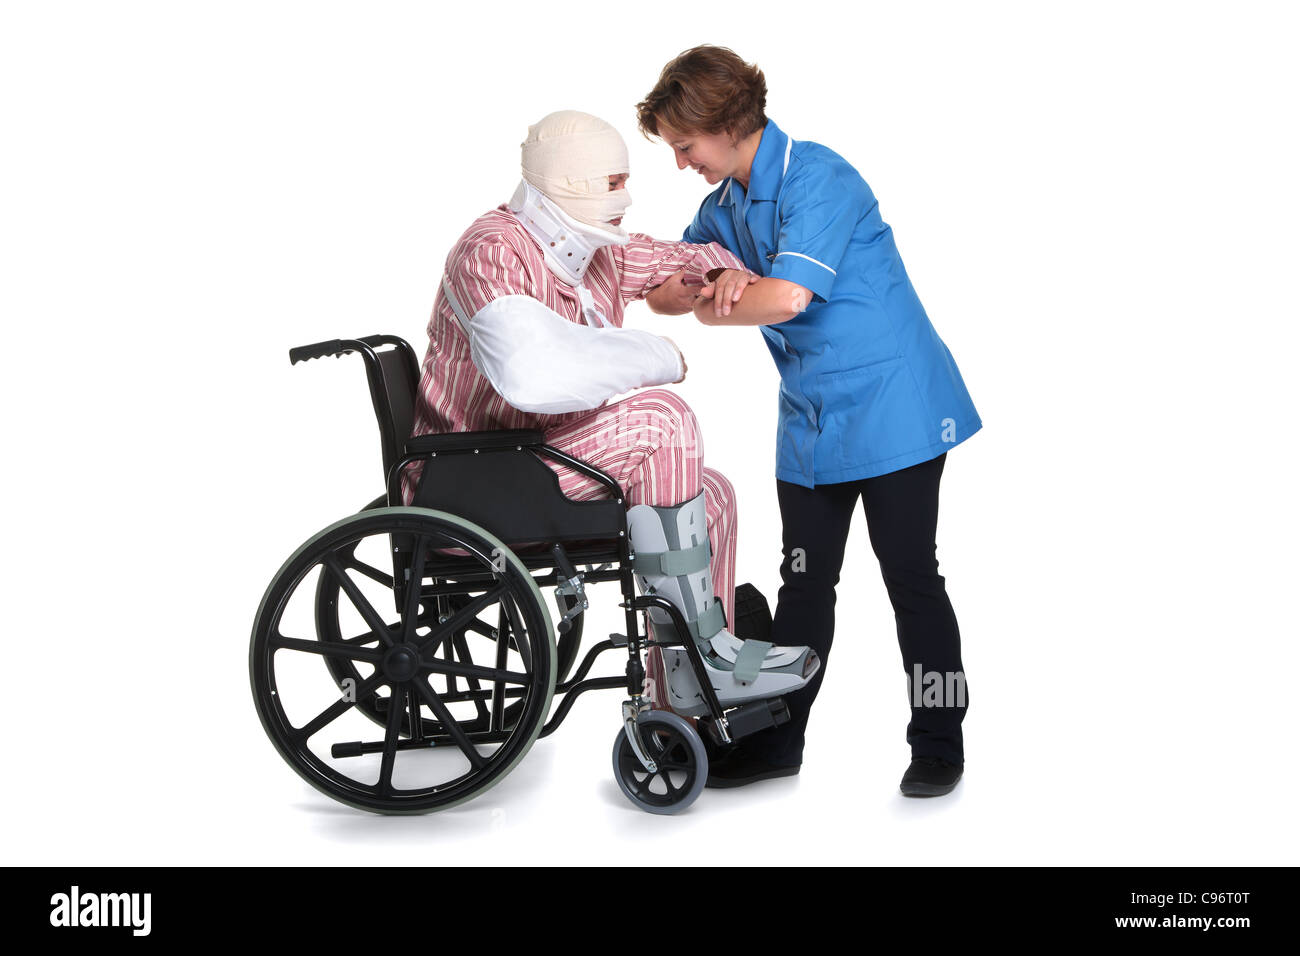 Foto von einem Krankenhauspatienten mit multiplen Verletzungen von einer Krankenschwester geholfen. Isoliert auf weißem Hintergrund. Stockfoto